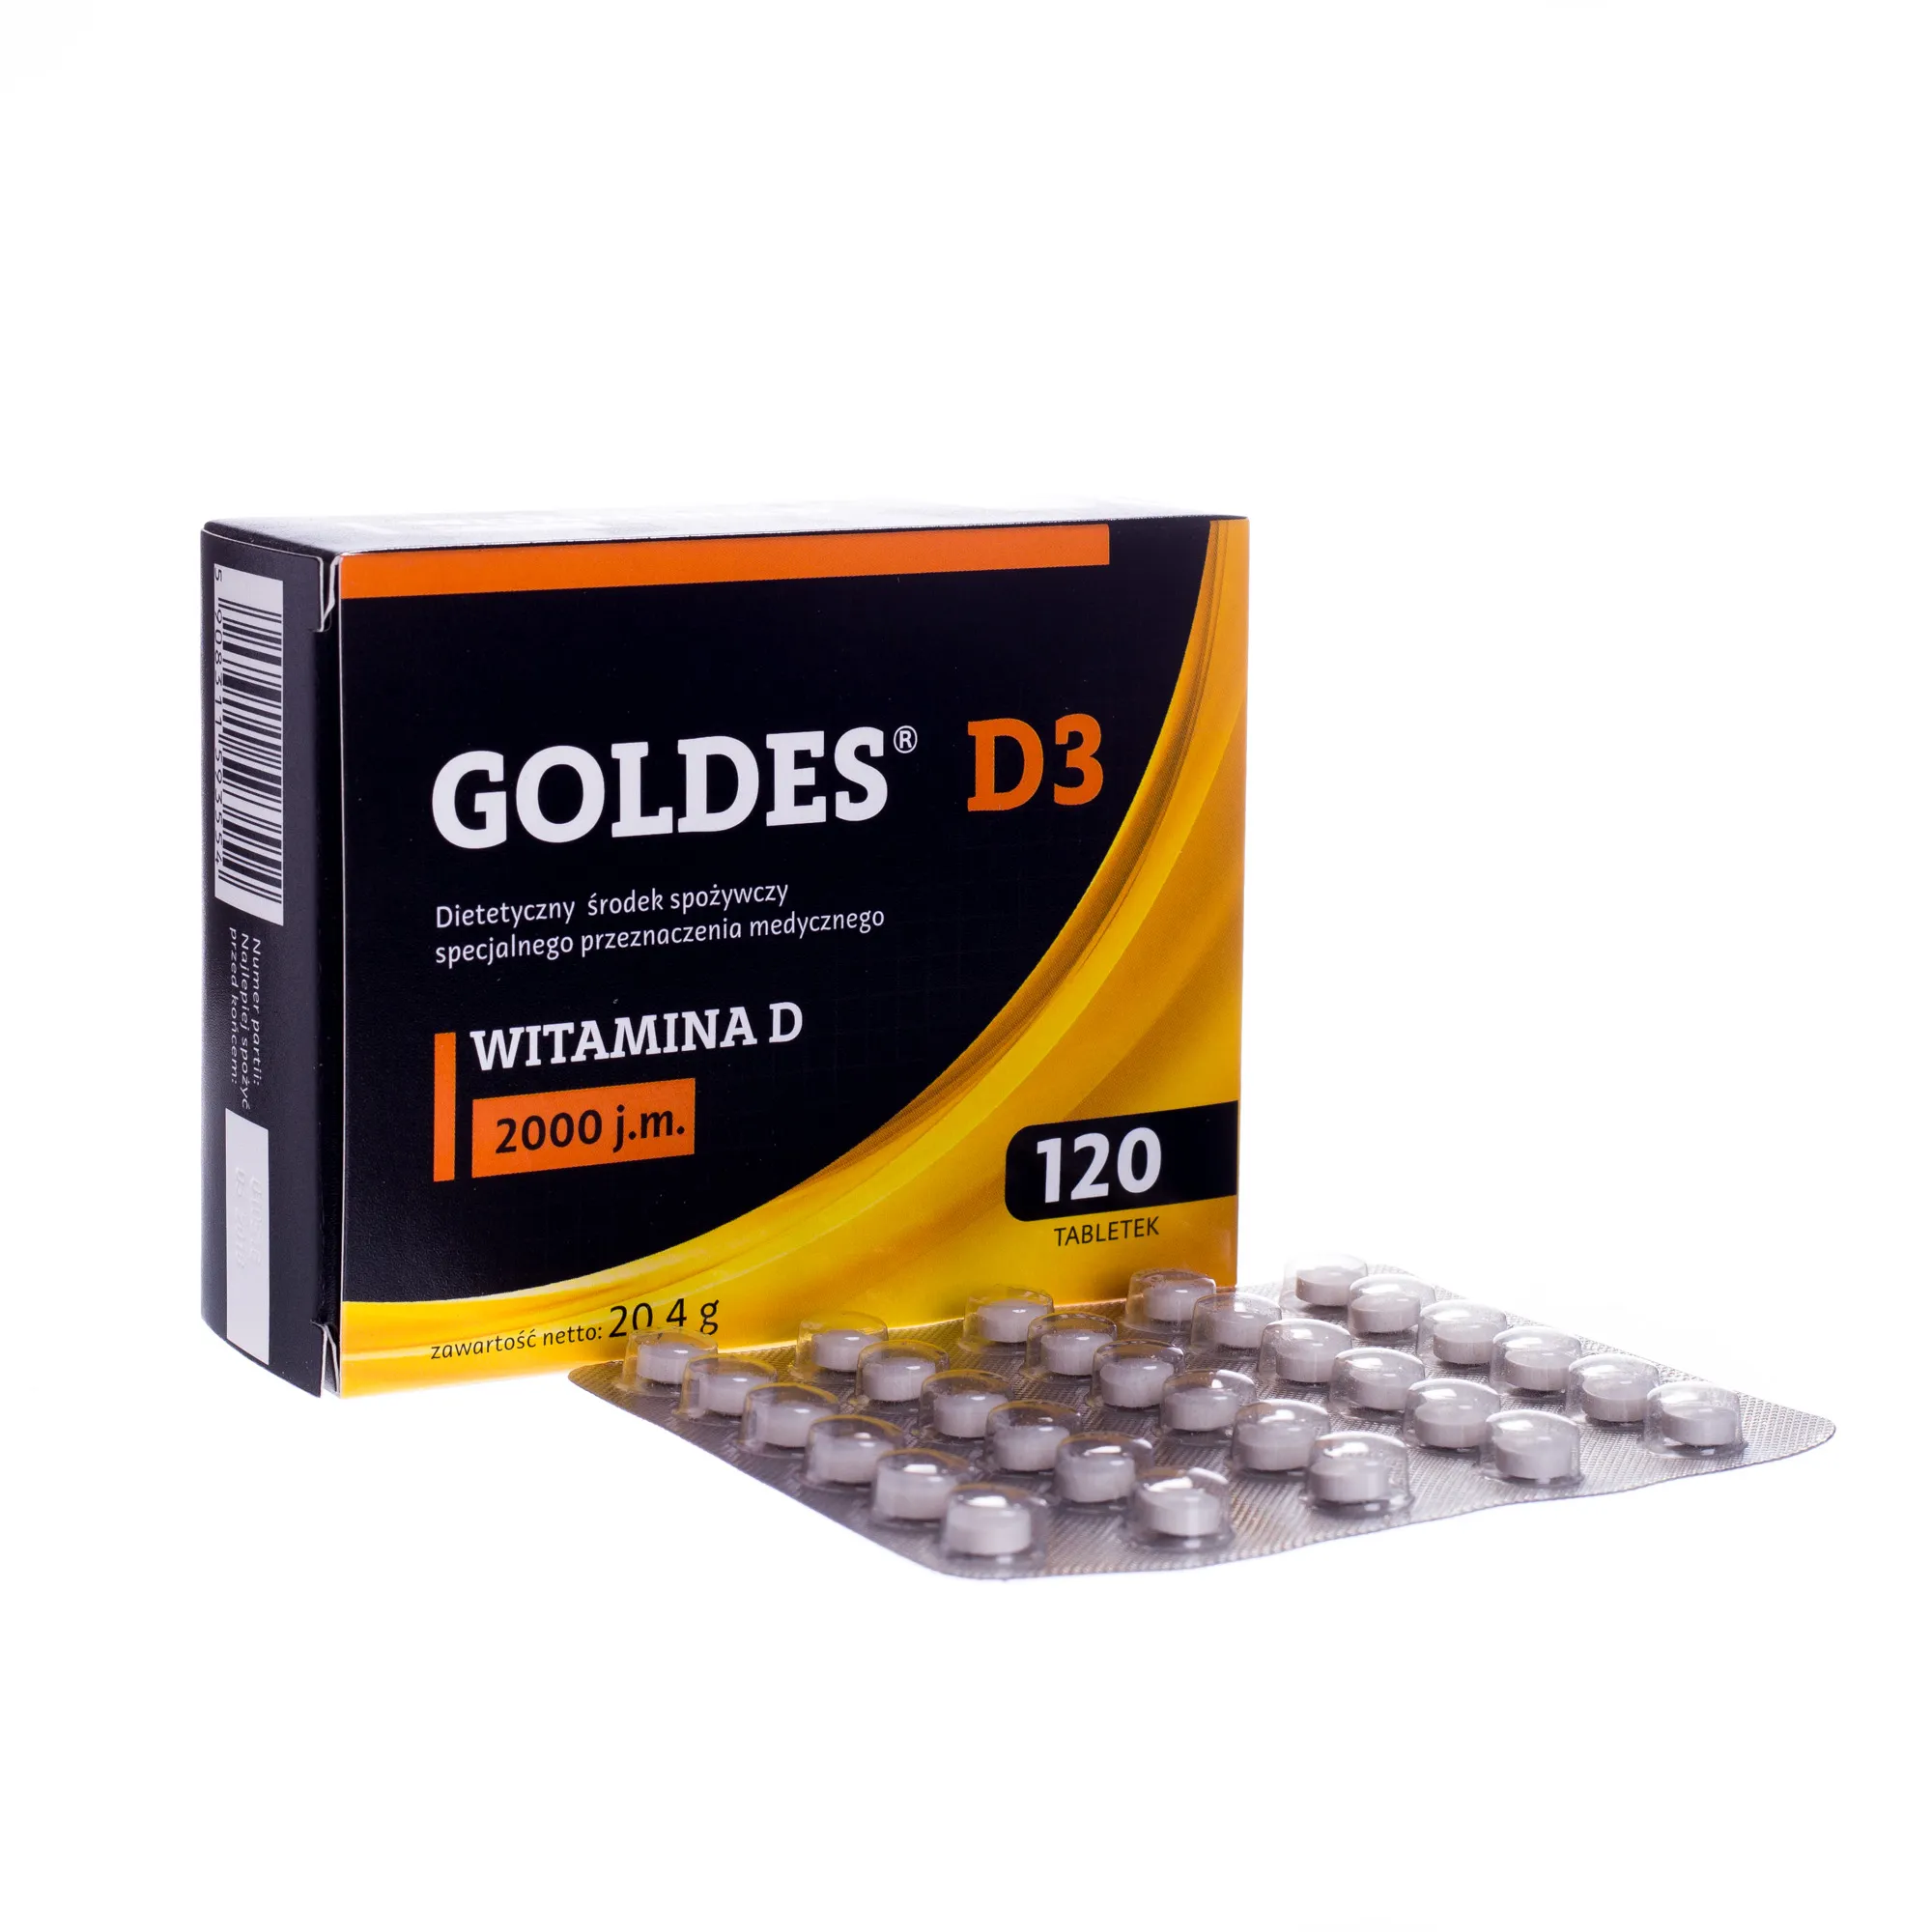 Goldes D3, Witamina D 2000 j.m., 120 tabletek 